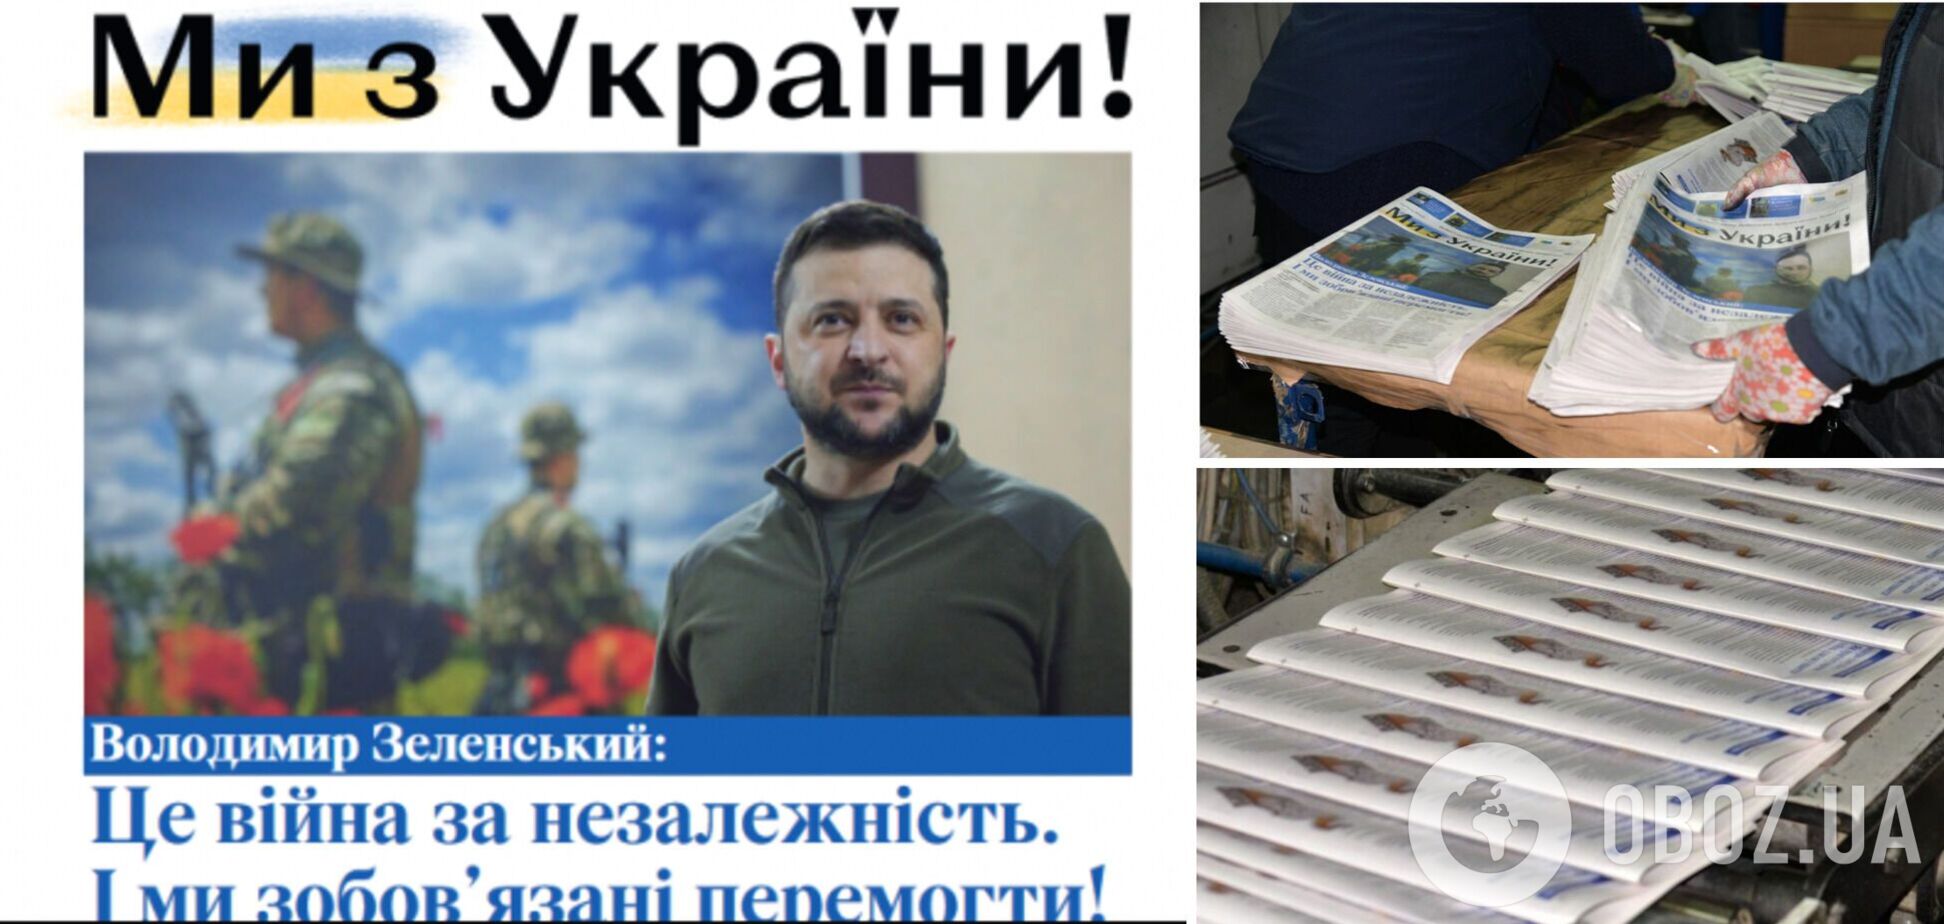 'Ми з України!': світ побачила народна газета, яку підготували українська та литовська спілки журналістів